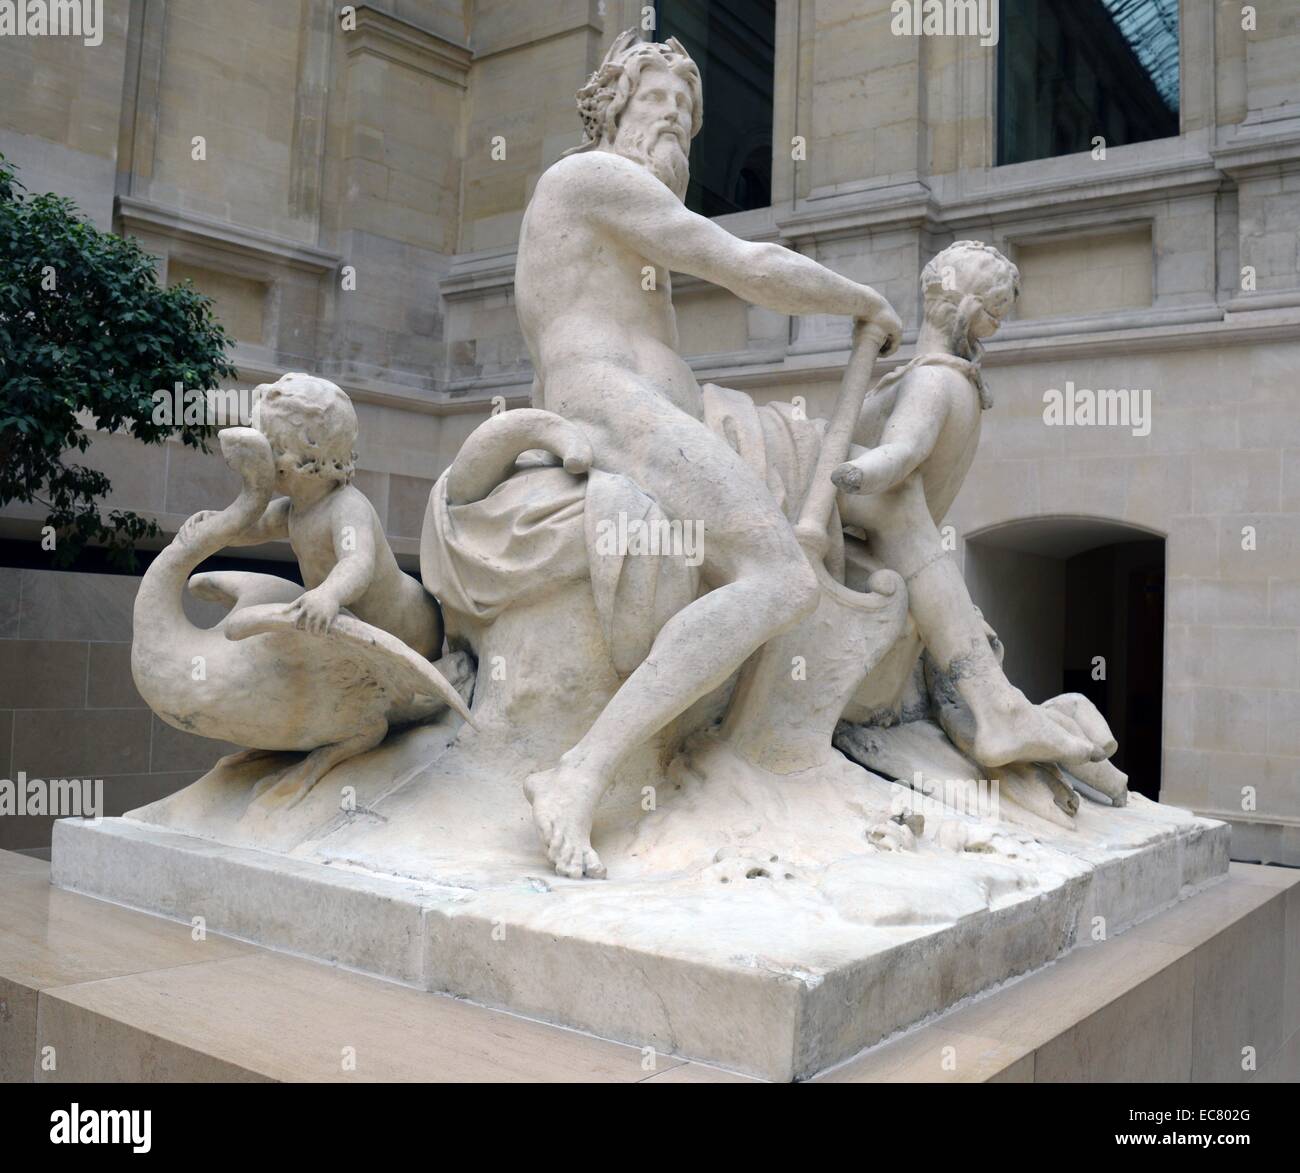 Statua in marmo della Senna e Marna da Nicolas Coustou (1658-1733), uno scultore francese il cui stile è stato basato sull'academic grande maniera di scultori. Risalenti al XVII secolo. Foto Stock